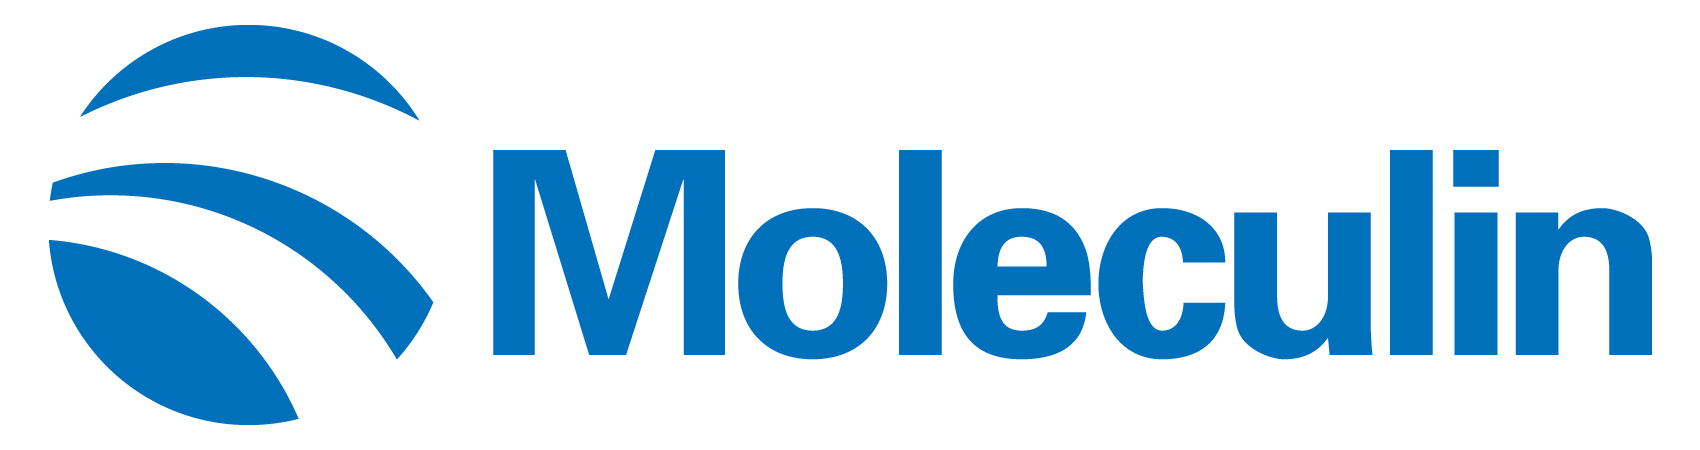 moleculin-logo_horiza32.jpg